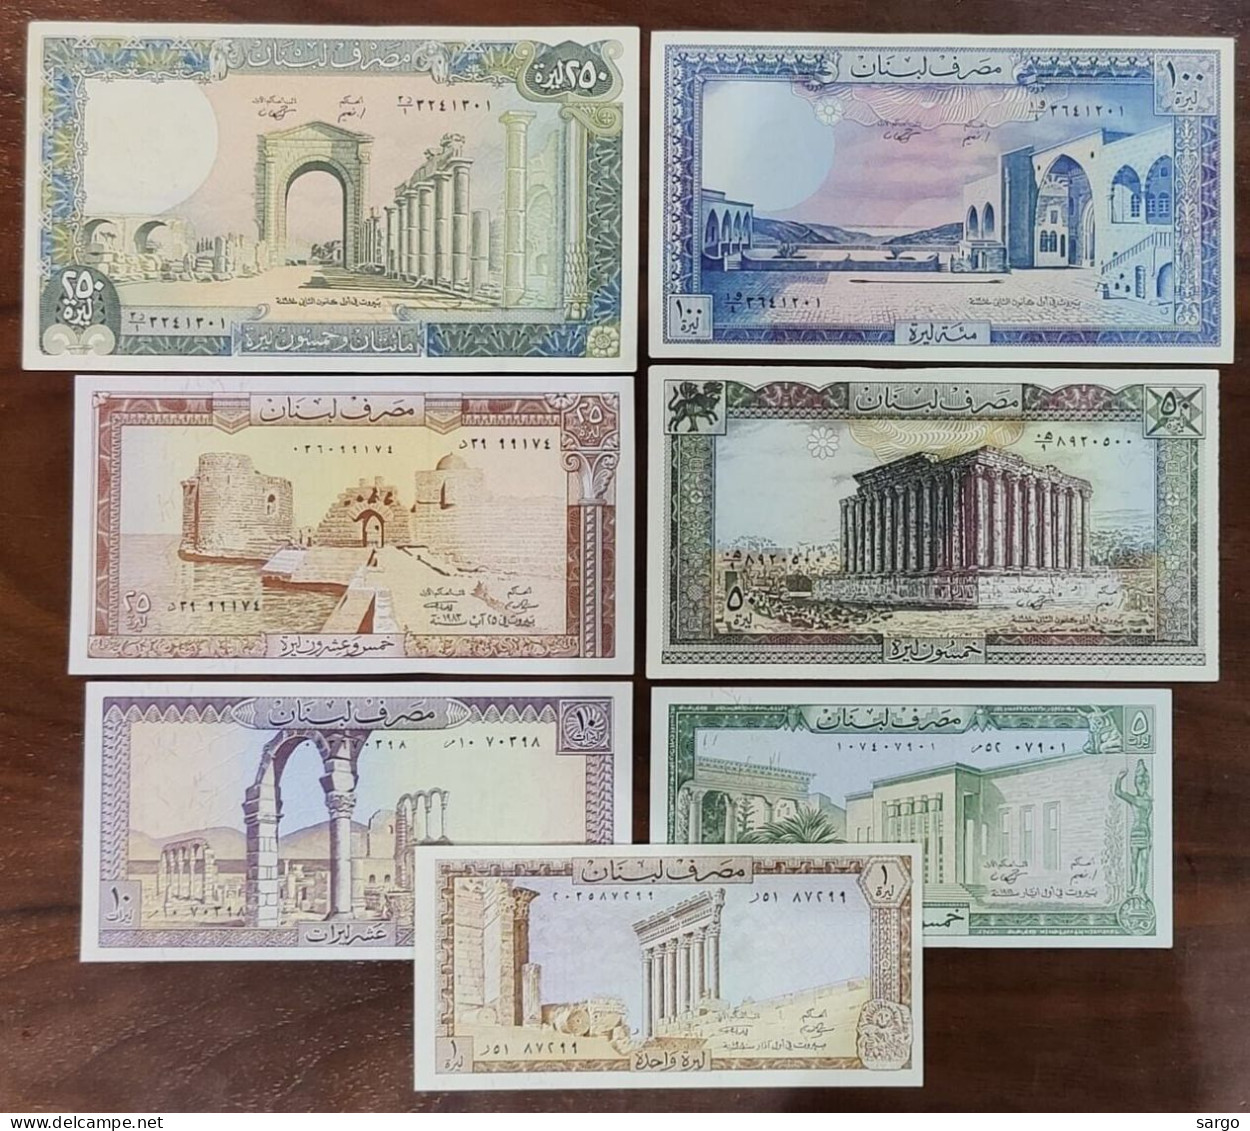 LEBANON - 7 BANKONOTES -  P 6 1 - P 67  (1980 - 1988) - UNC - BANKNOTES - PAPER MONEY - - Lebanon